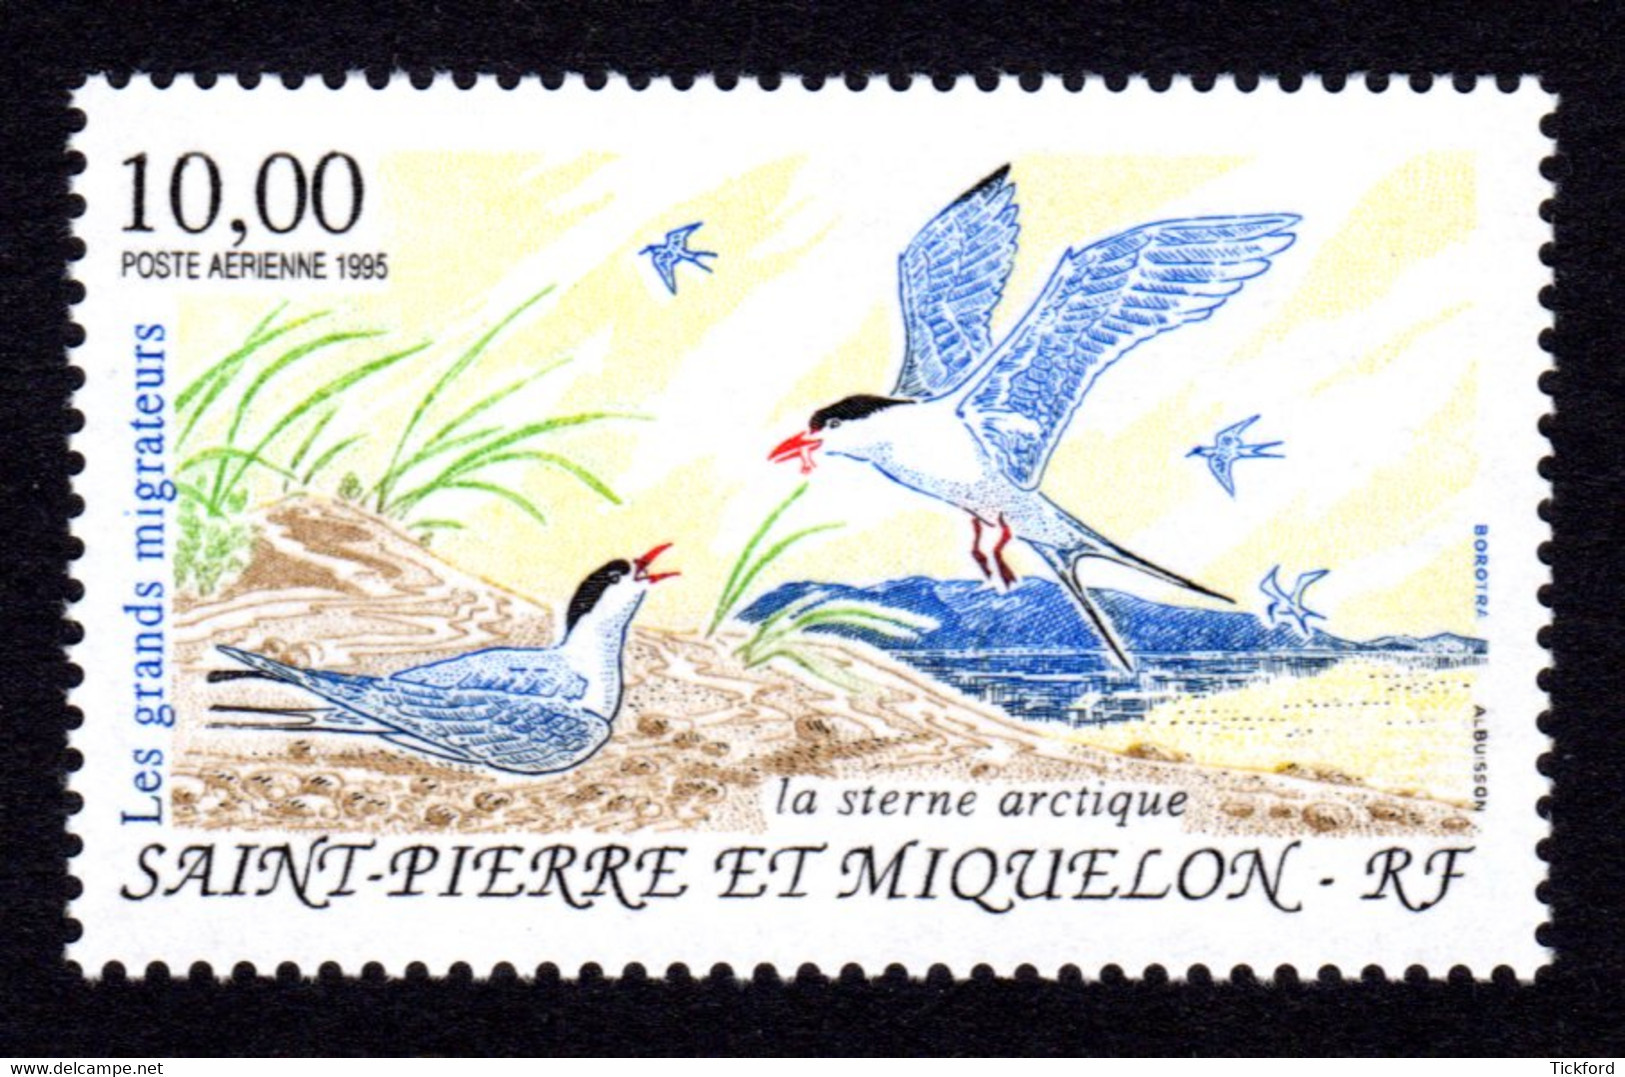 S.P.M. 1995 - PA  Yvert N° 74 -  Neuf **/ MNH - Oiseaux Migrateurs, Birds - Neufs